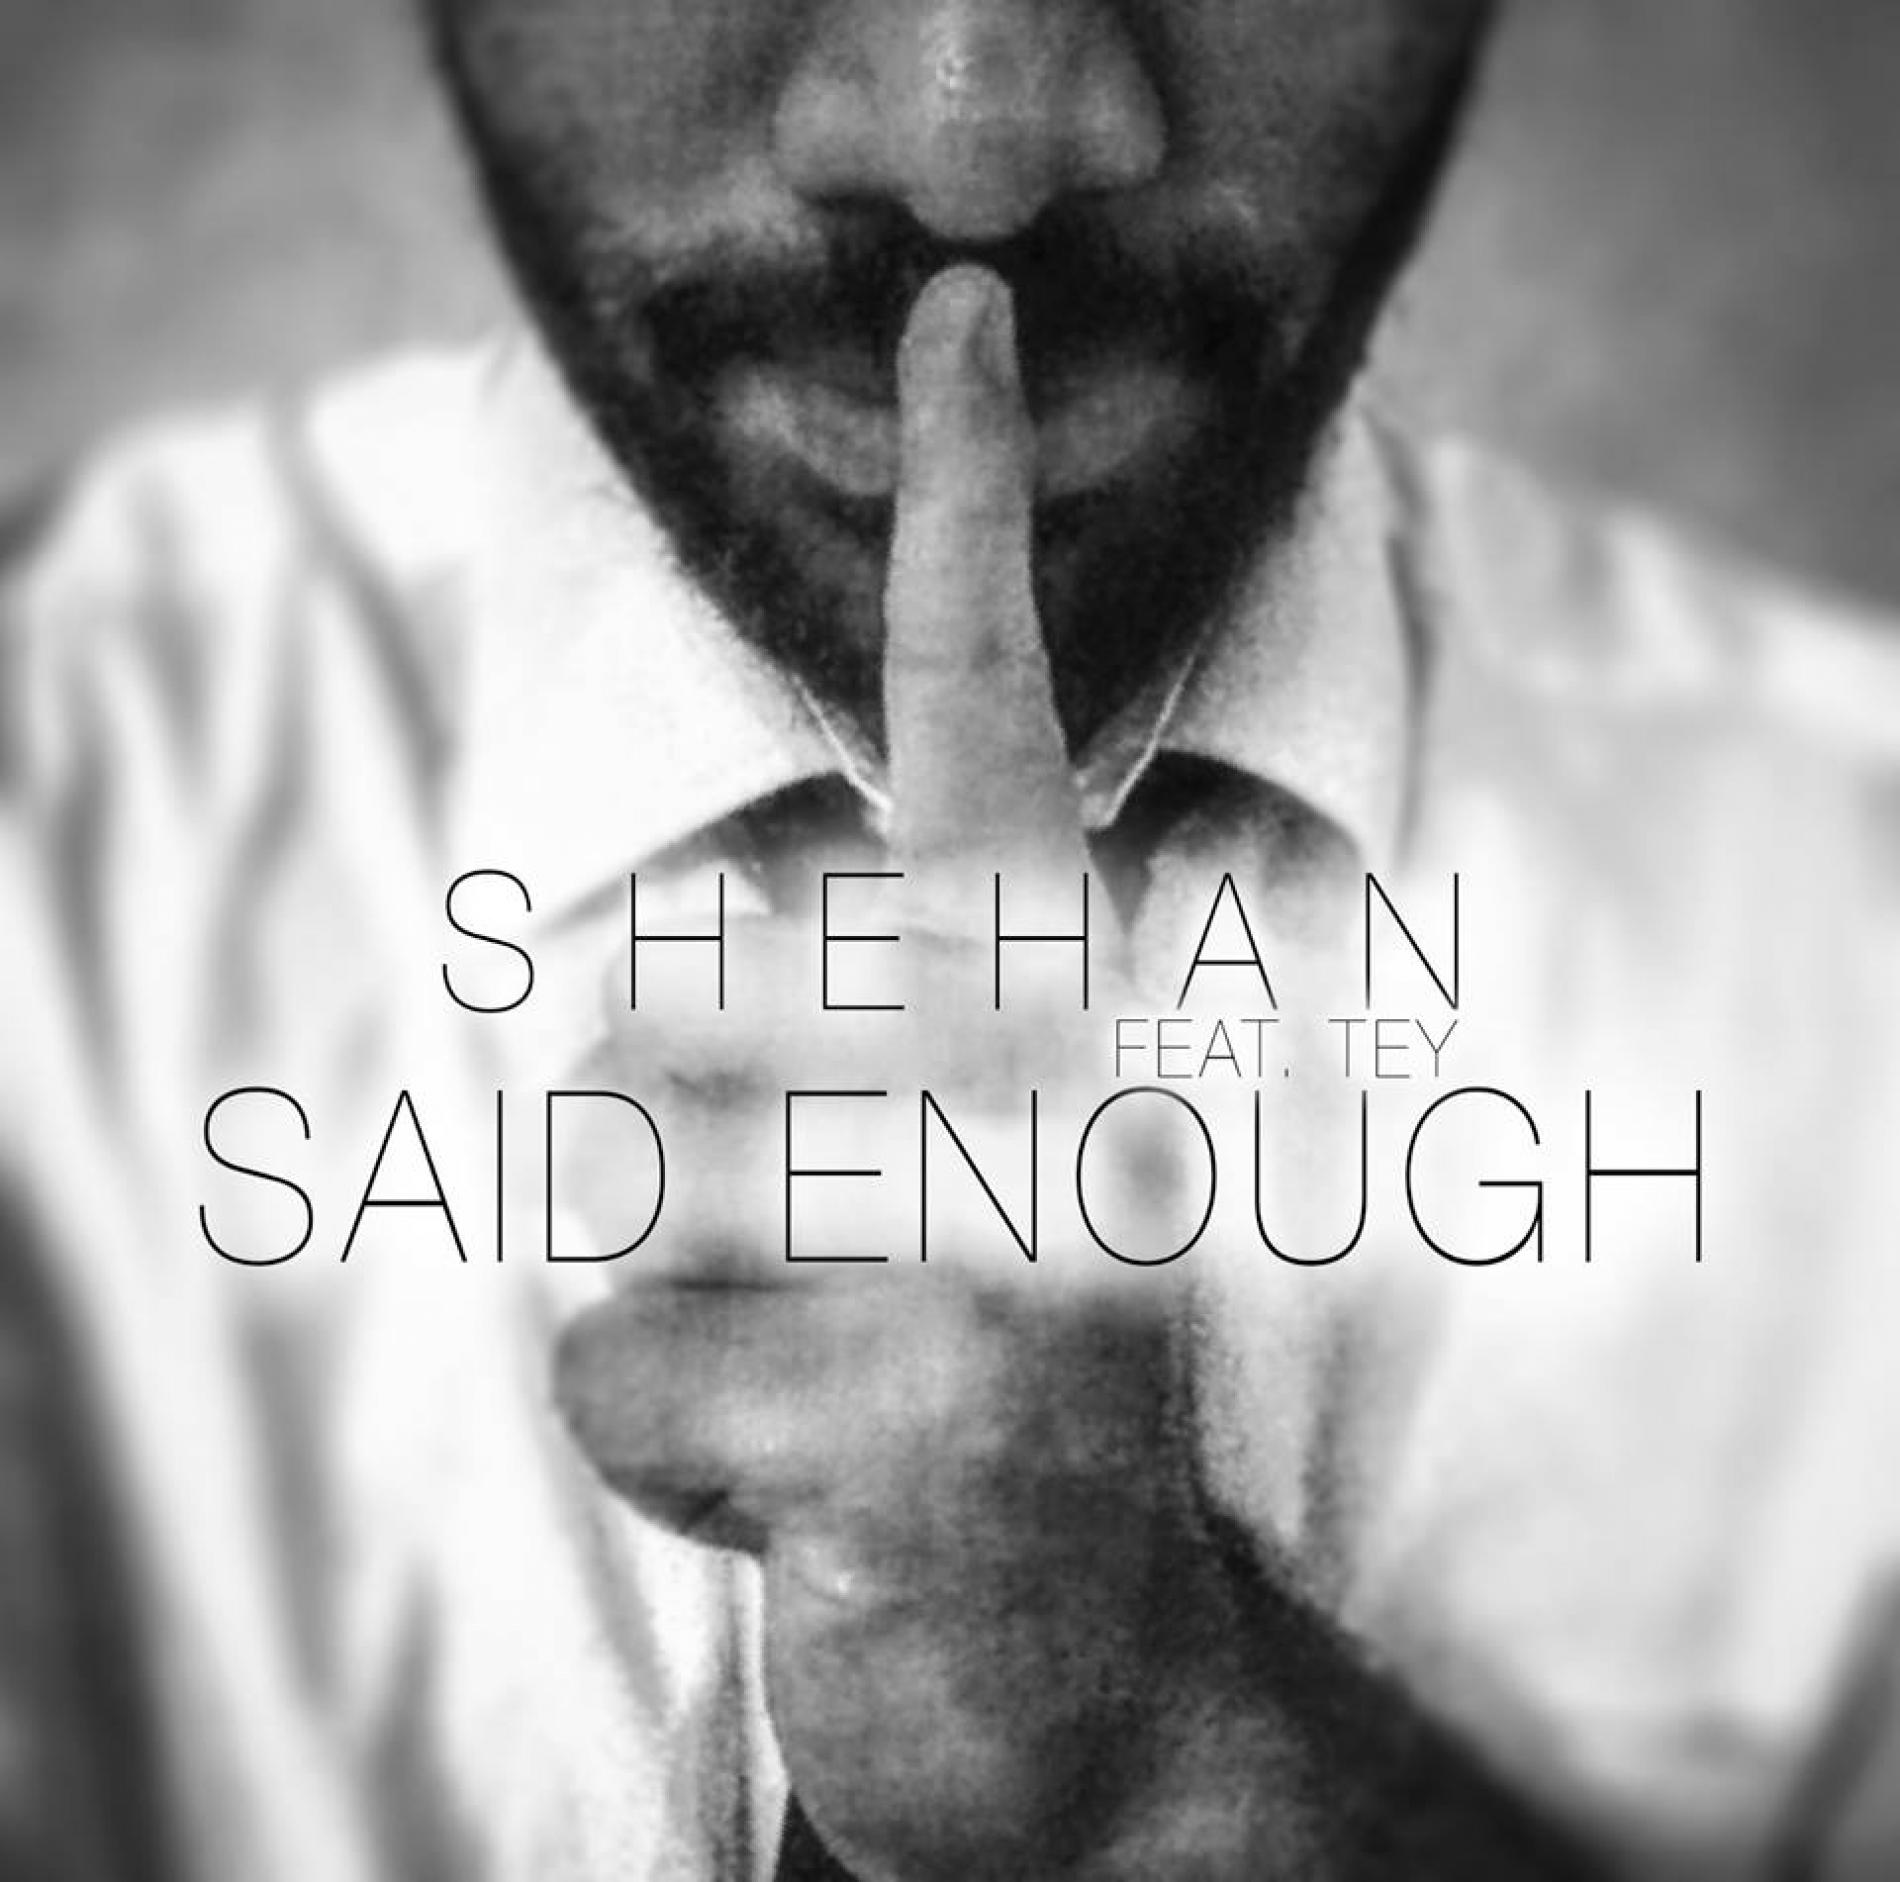 Shehan Somaratna Ft Tey – Said Enough